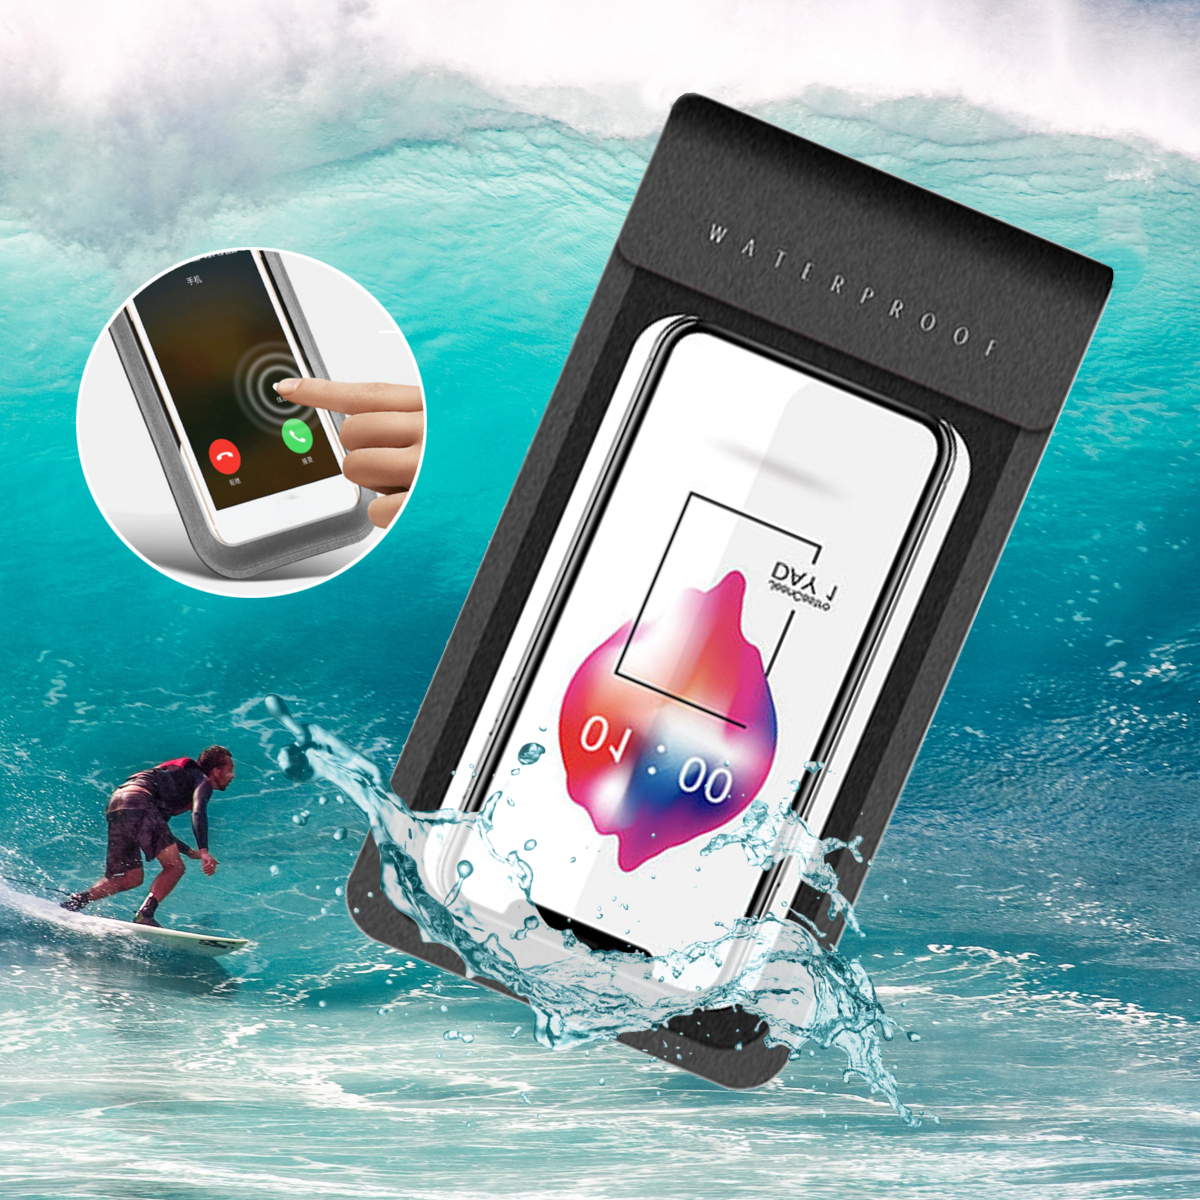 

ПВХ Универсальный Водонепроницаемы Телефон Сумка Чехол для плавания Сухой Сумка Для 5.0-6.1 дюймов Смартфон iPhone XS Sa